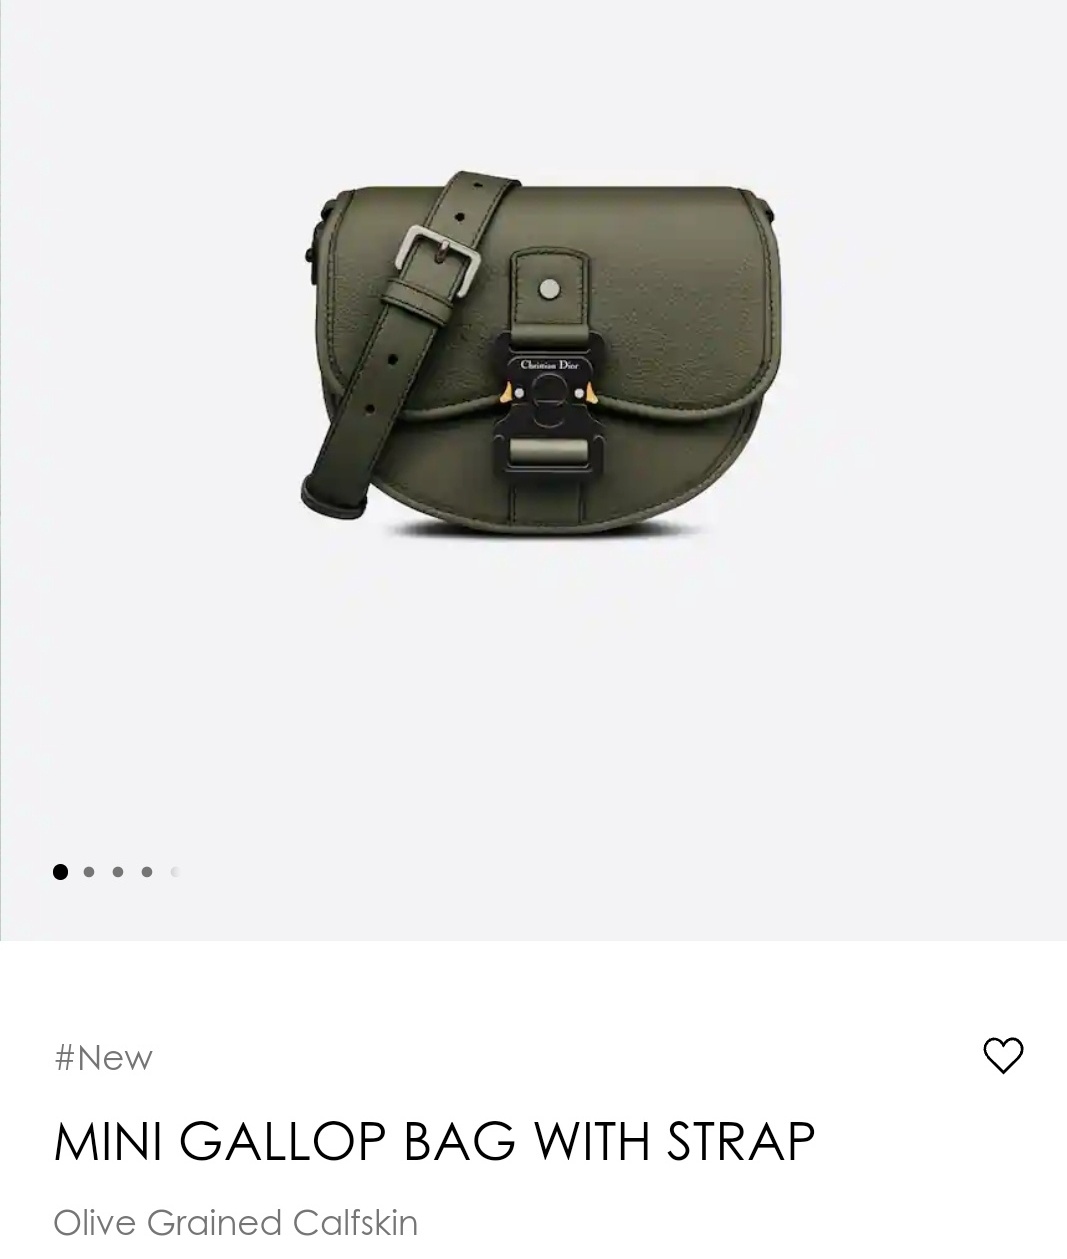 Mini Gallop Bag with Strap